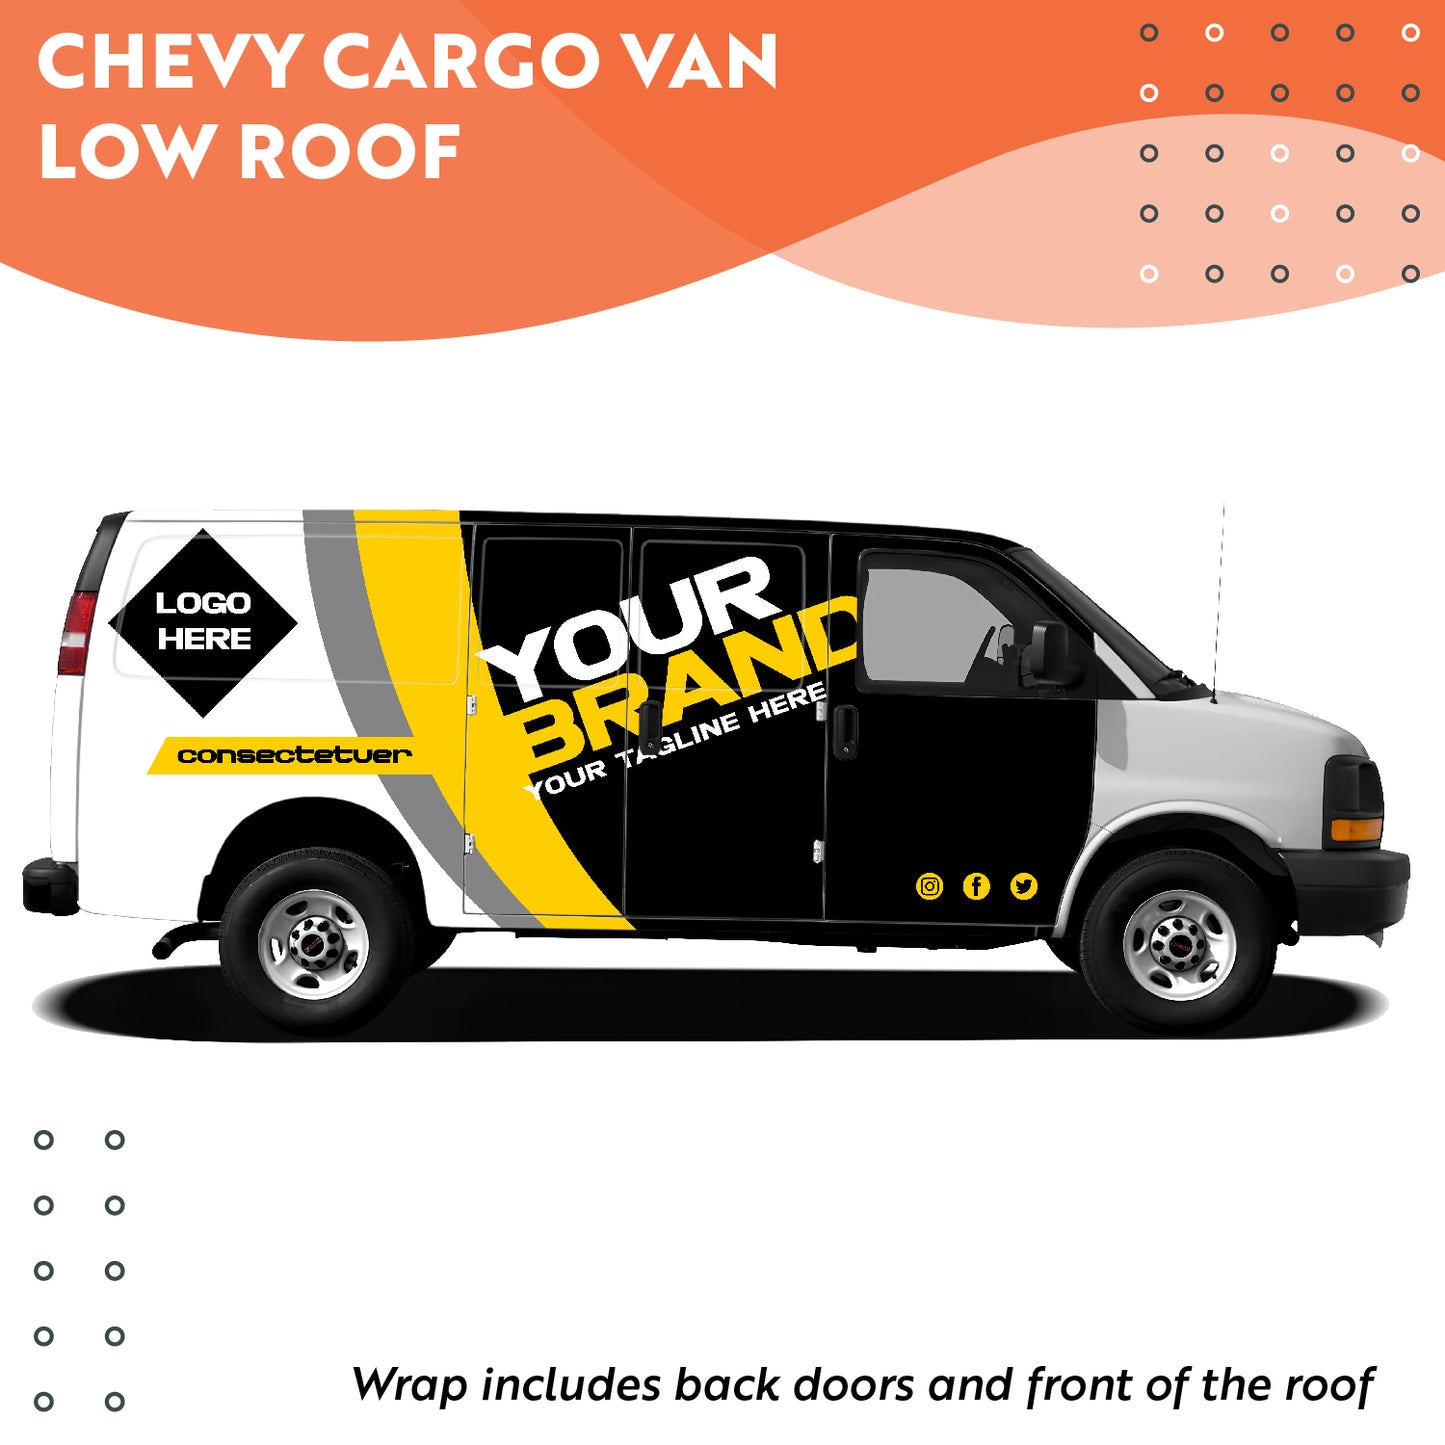 Chevy Cargo Van Low Roof (GMC/CHEVROLET)